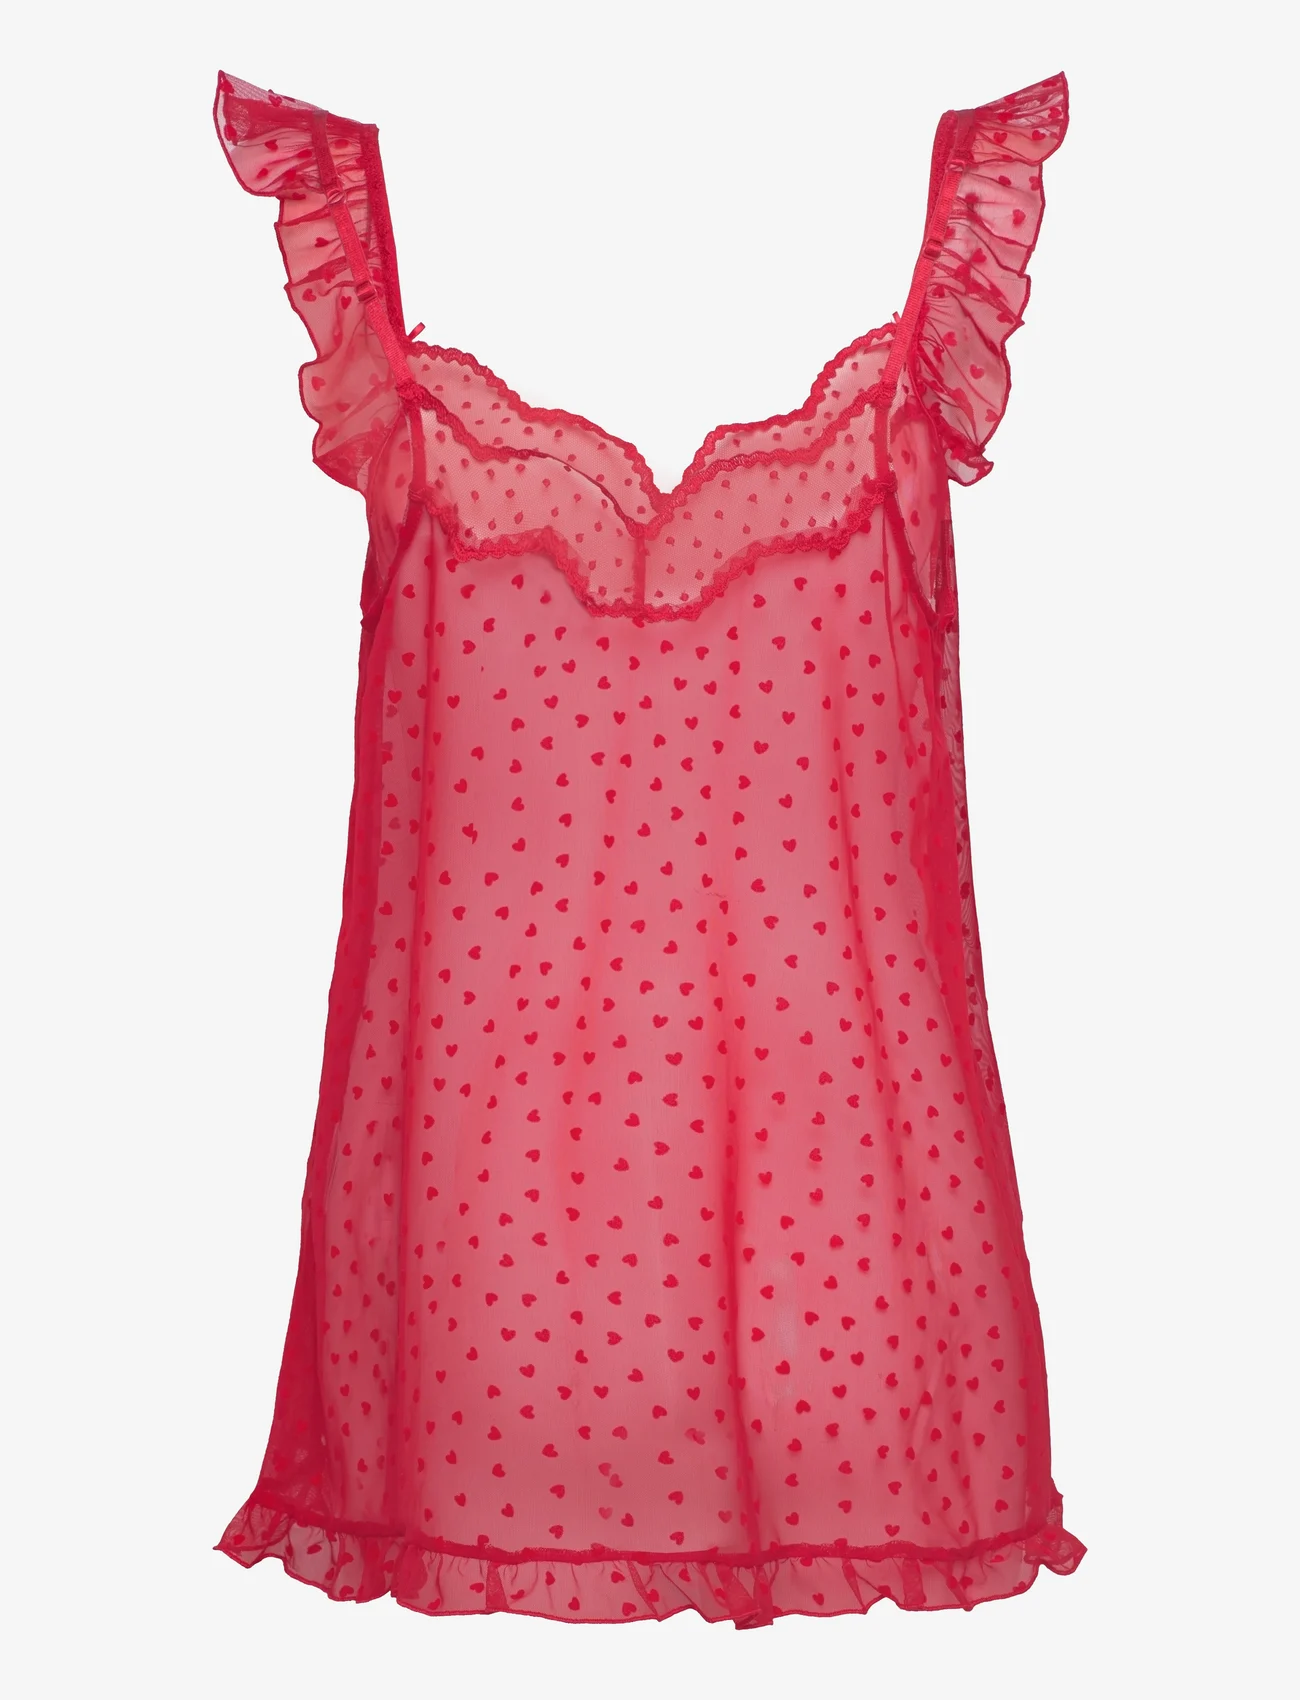 Etam - Cuore Nightdress Pyjama - madalaimad hinnad - red - 1